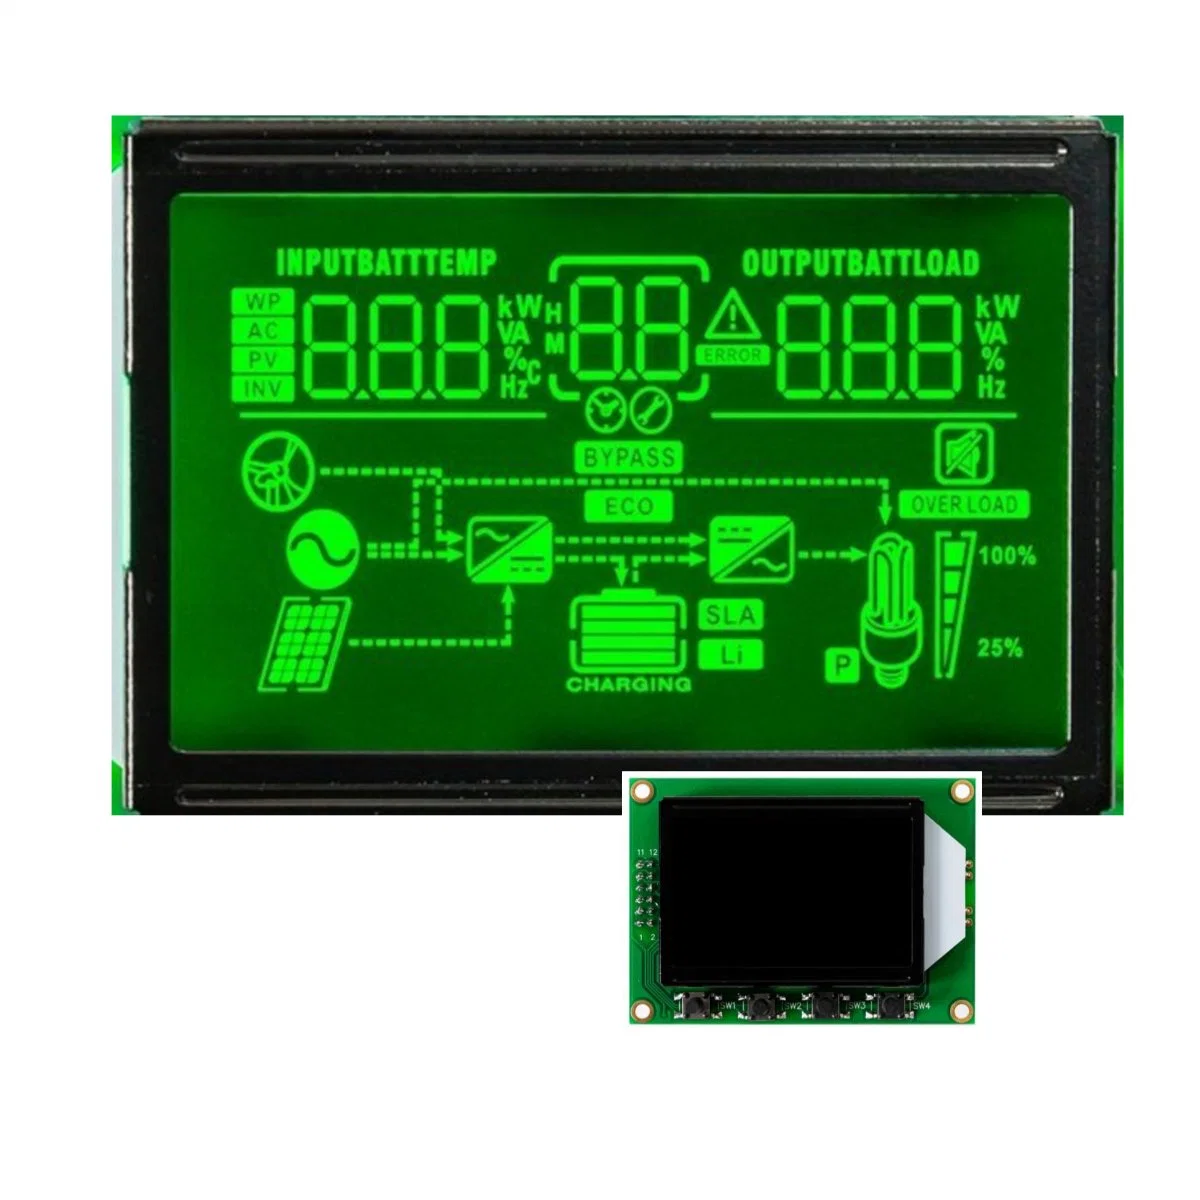 Ecrã do módulo LCD VA HTN com LED preto verde para Carregamento do veículo